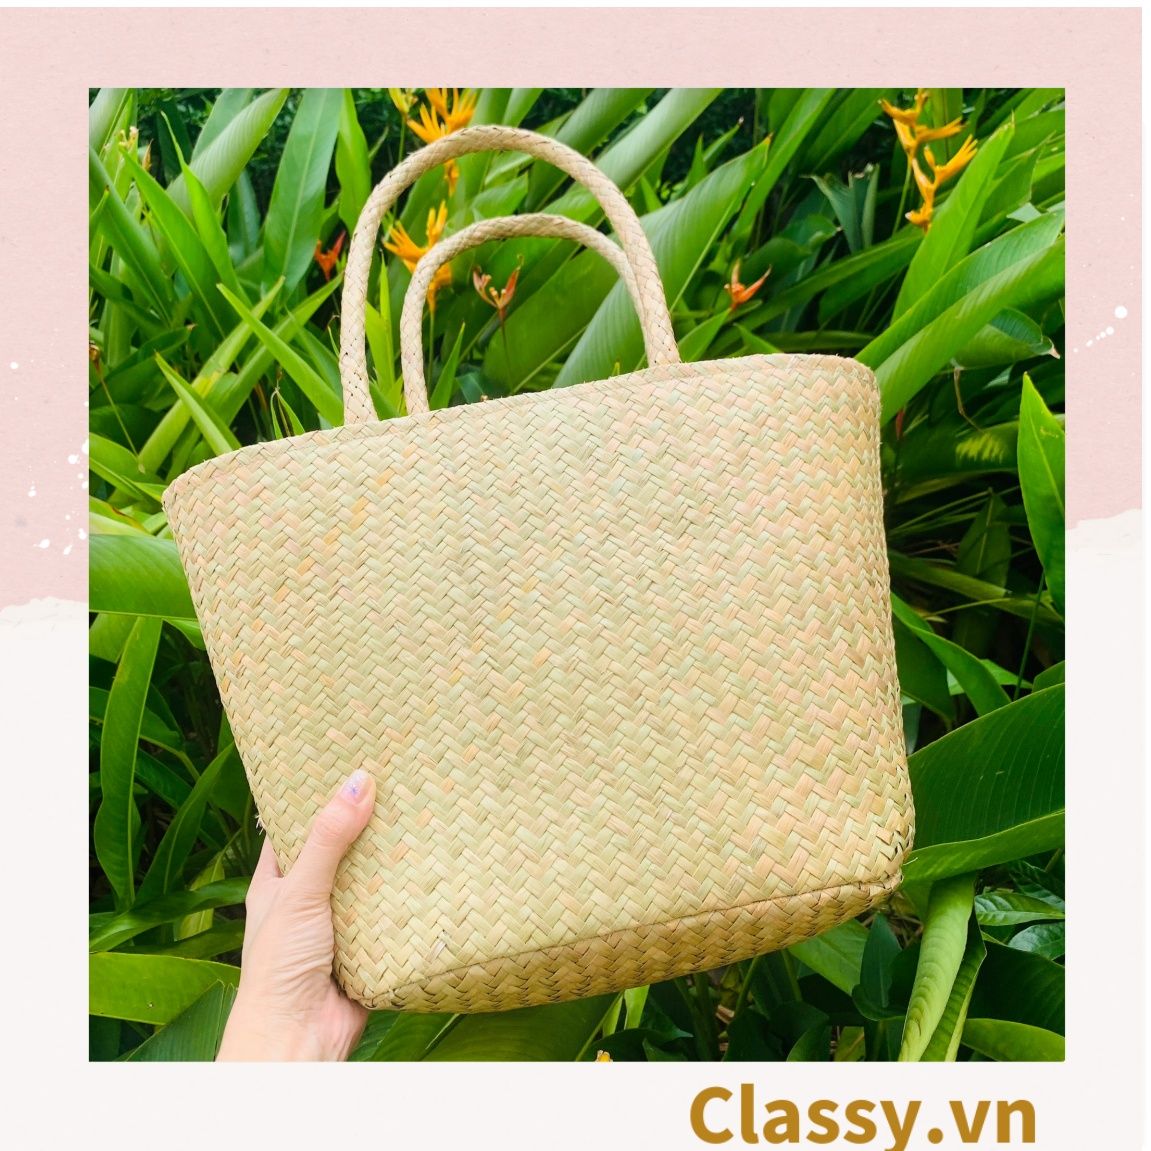  Túi cỏ bàng dáng bầu, có lớp lót làm từ cỏ bàng 100% thiên nhiên, từ bàn tay thợ thủ công Việt Nam T985 